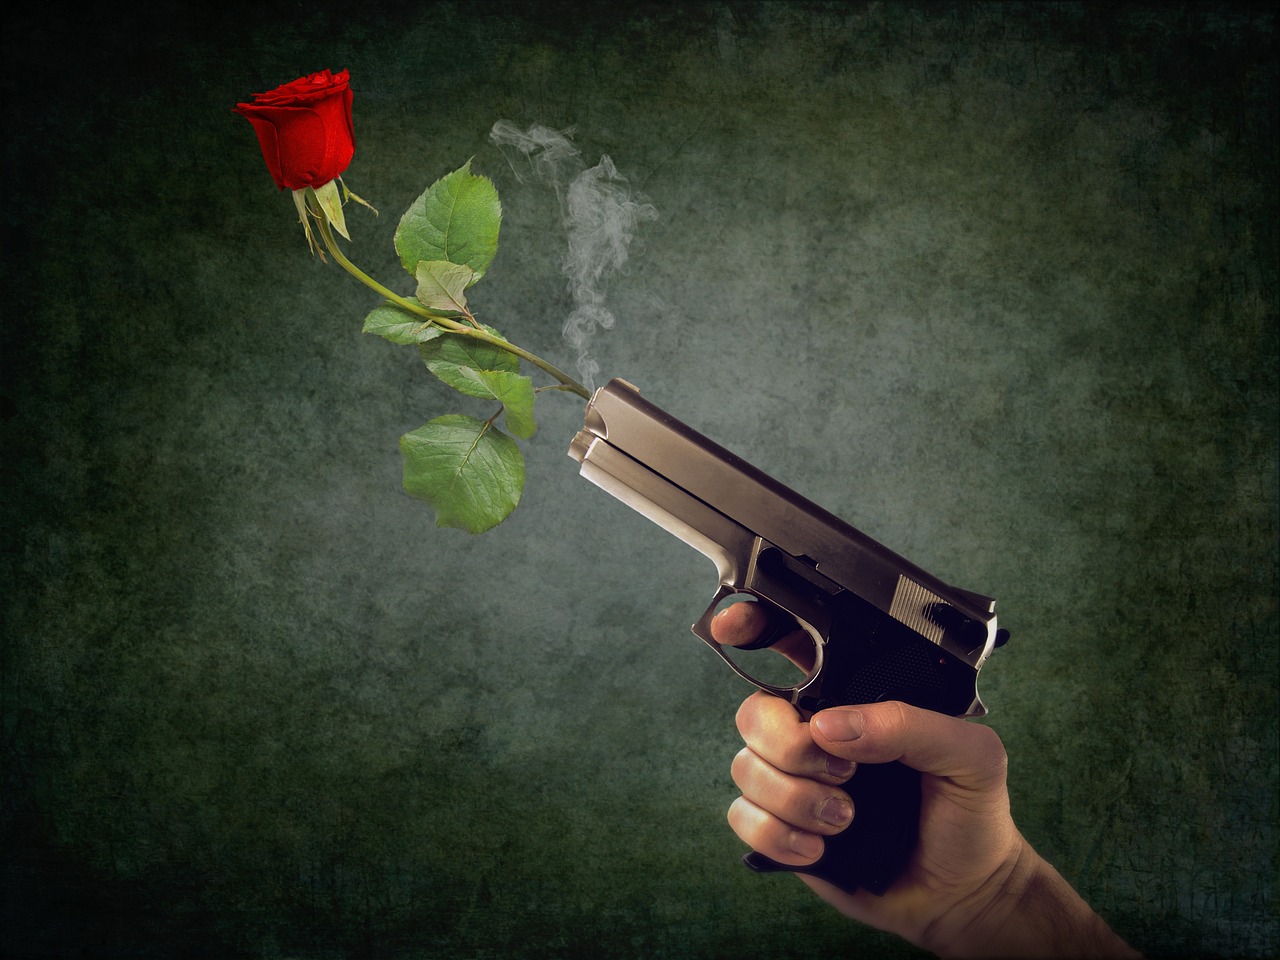 Gun and rose. 